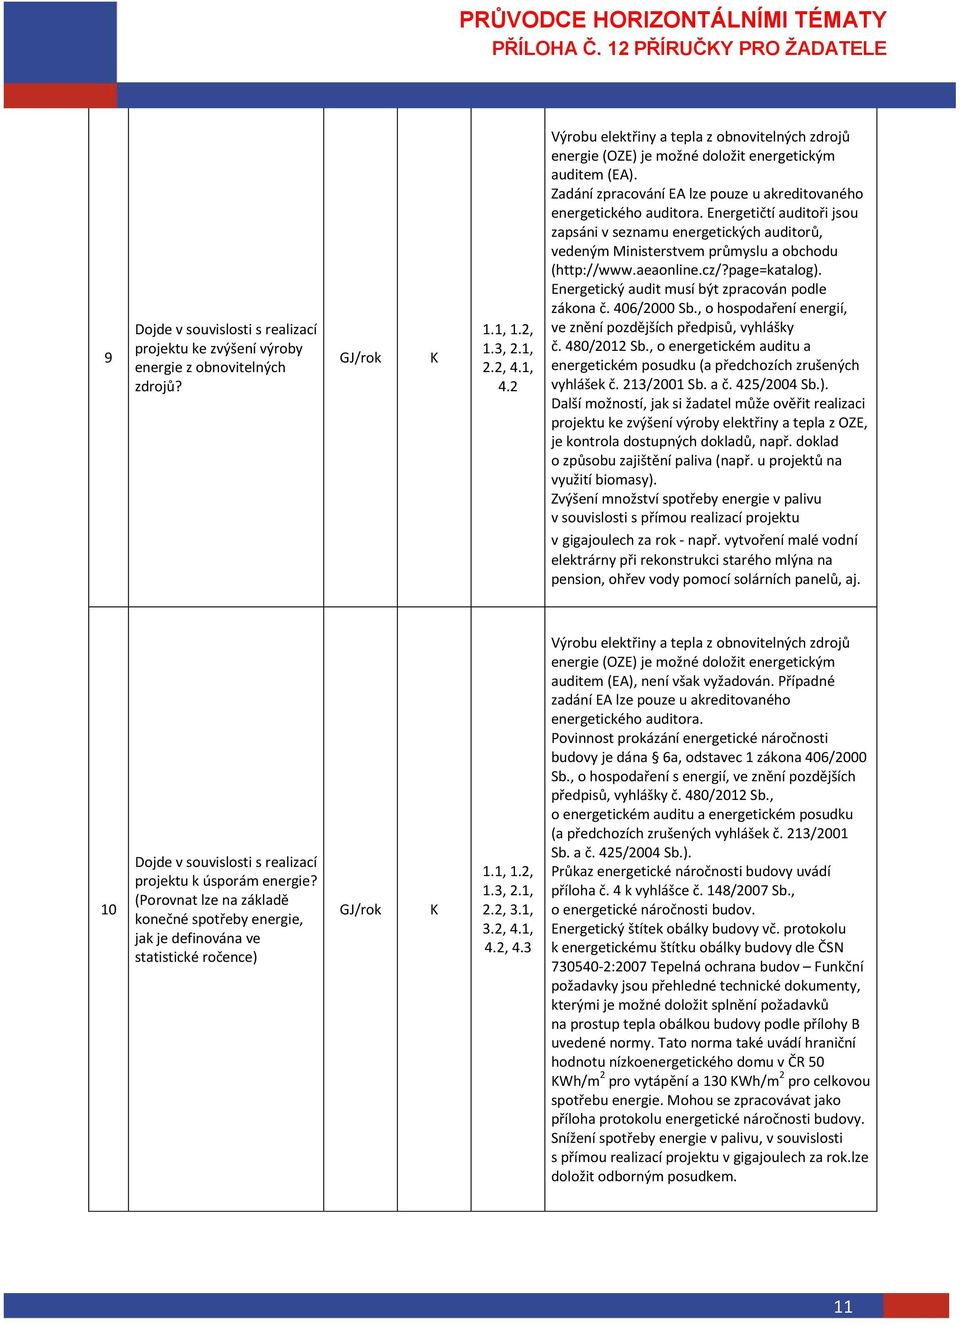 Energetičtí auditoři jsou zapsáni v seznamu energetických auditorů, vedeným Ministerstvem průmyslu a obchodu (http://www.aeaonline.cz/?page=katalog).